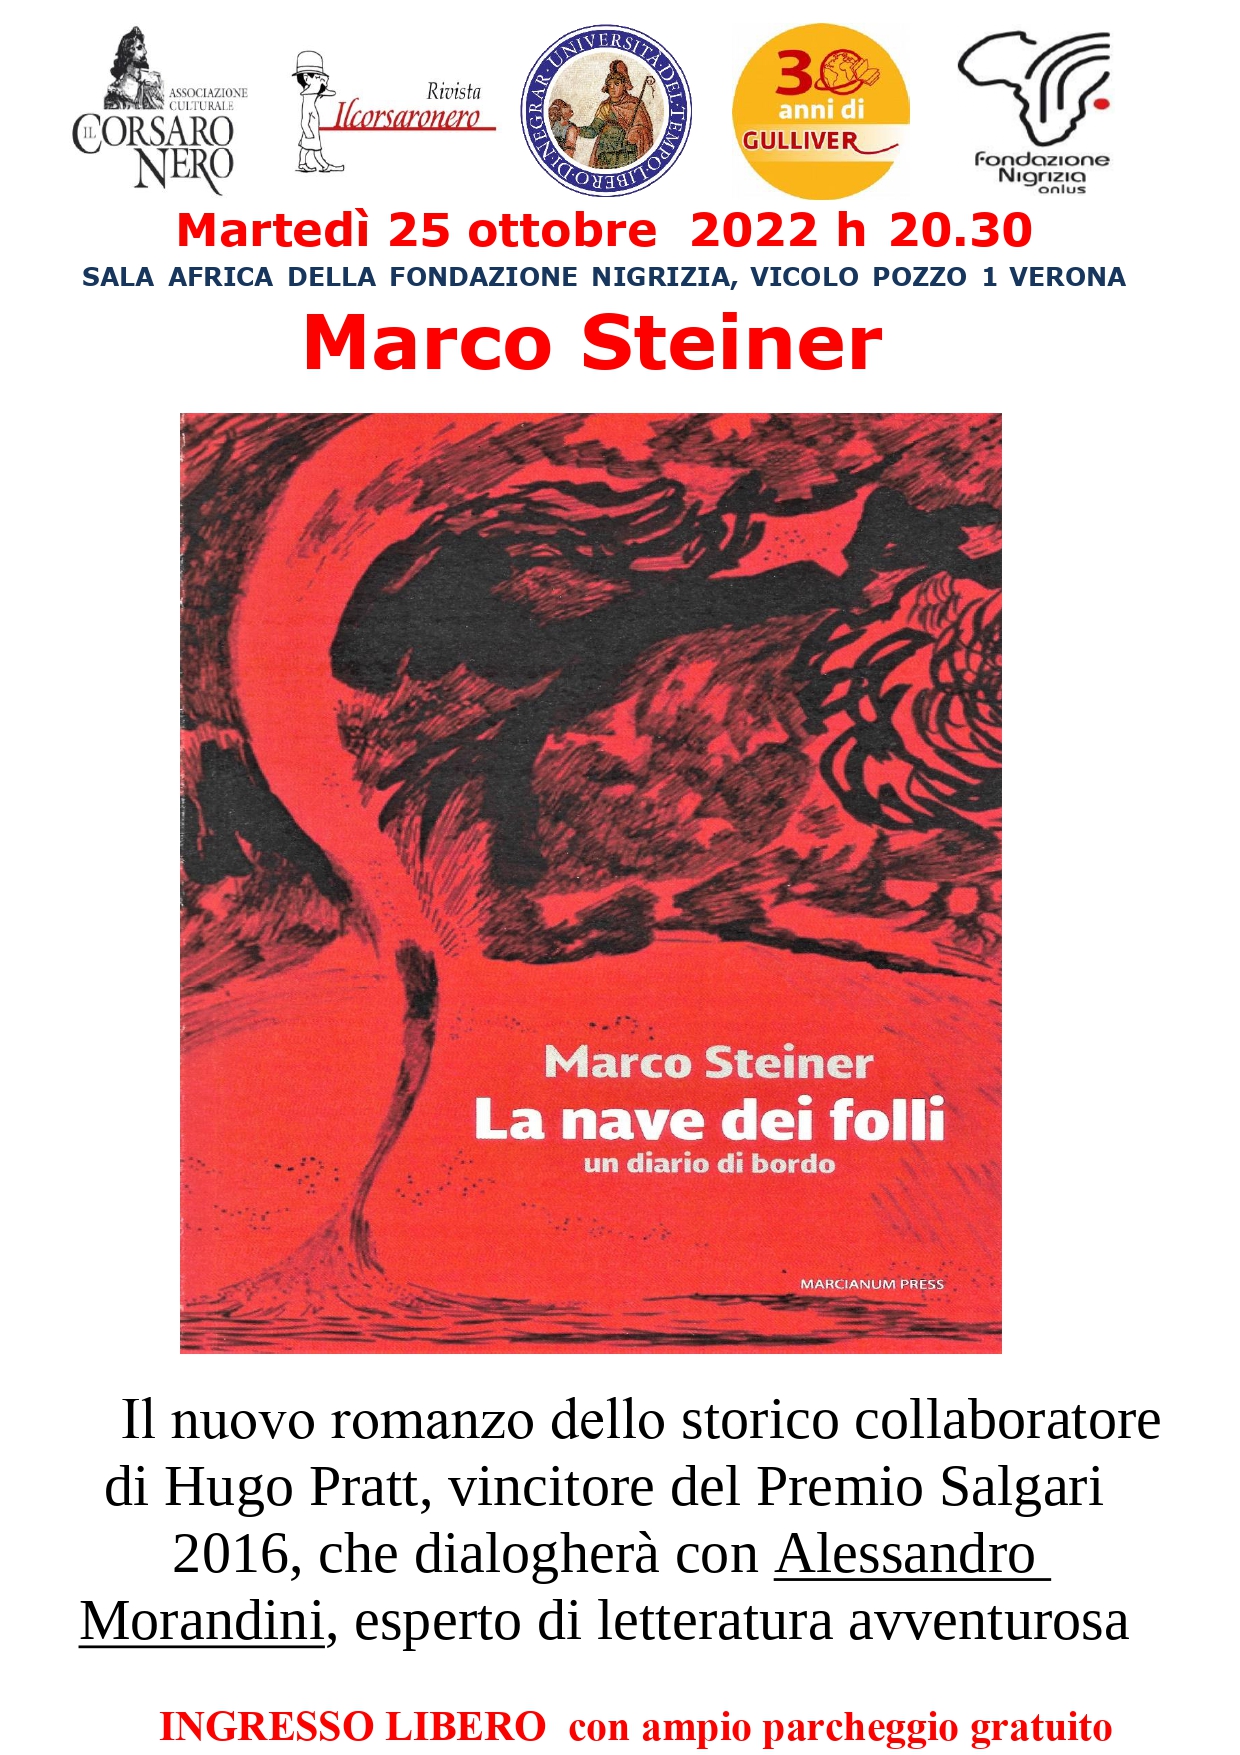 Marco Steiner presenta martedì alla Fondazione Nigrizia la sua “Nave dei folli”